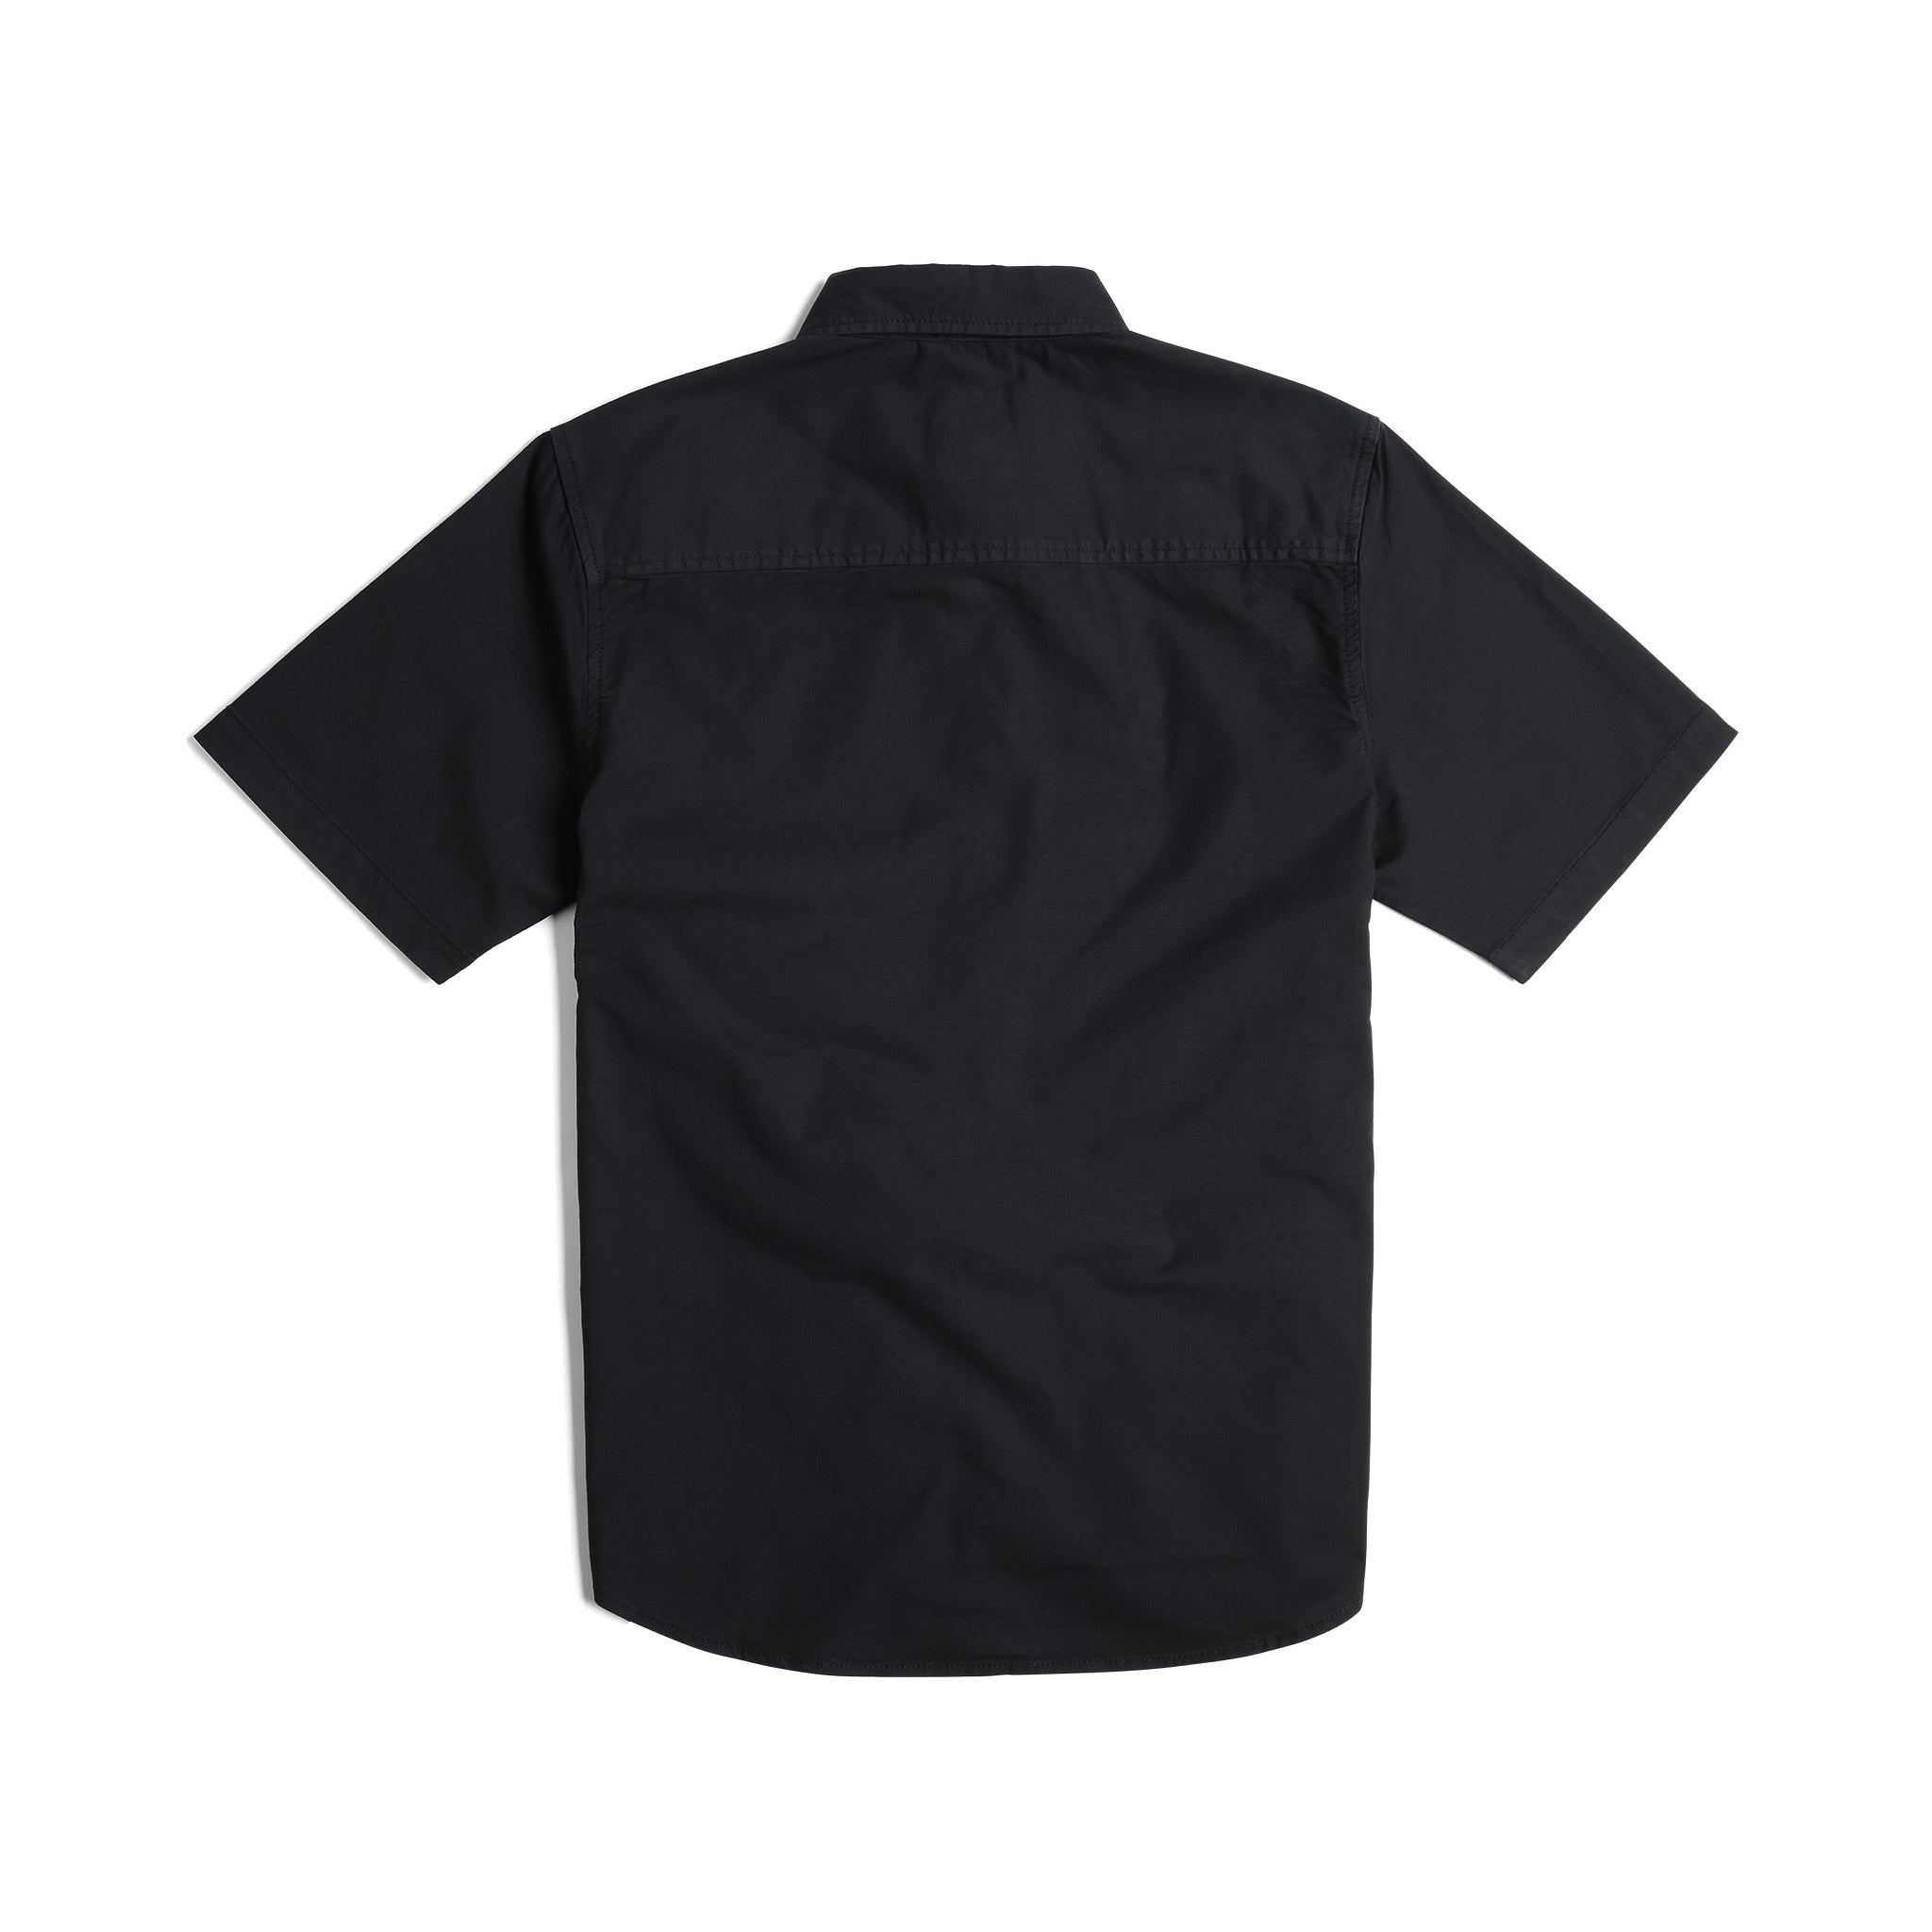 Back View of Topo Designs Dirt Desert Shirt Ss - Men's in "Black"